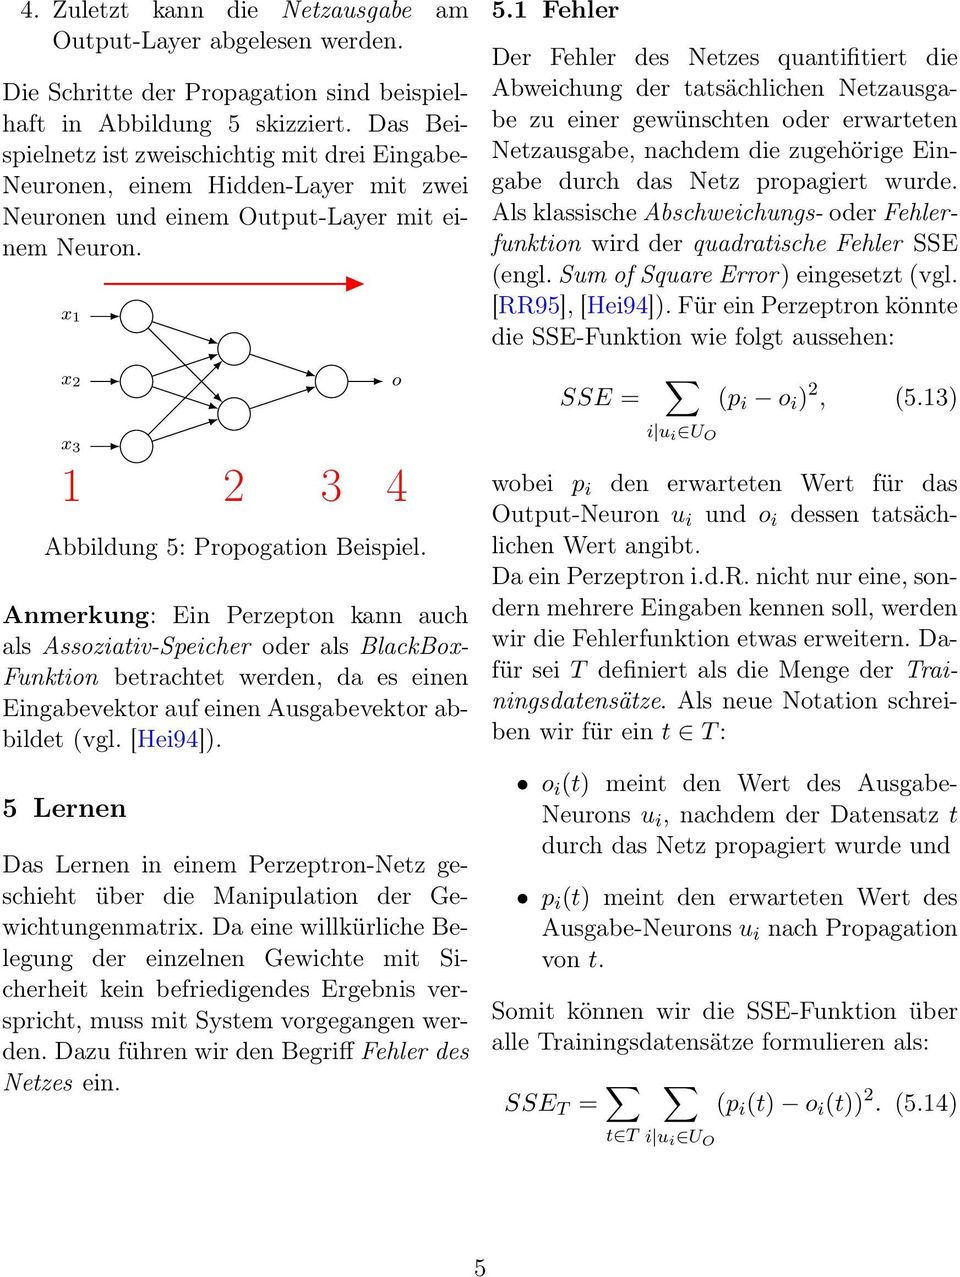 BlackBox- Funktion betrachtet werden, da es einen Eingabevektor auf einen Ausgabevektor abbildet (vgl [Hei94]) 5 Lernen Das Lernen in einem Perzeptron-Netz geschieht über die Manipulation der